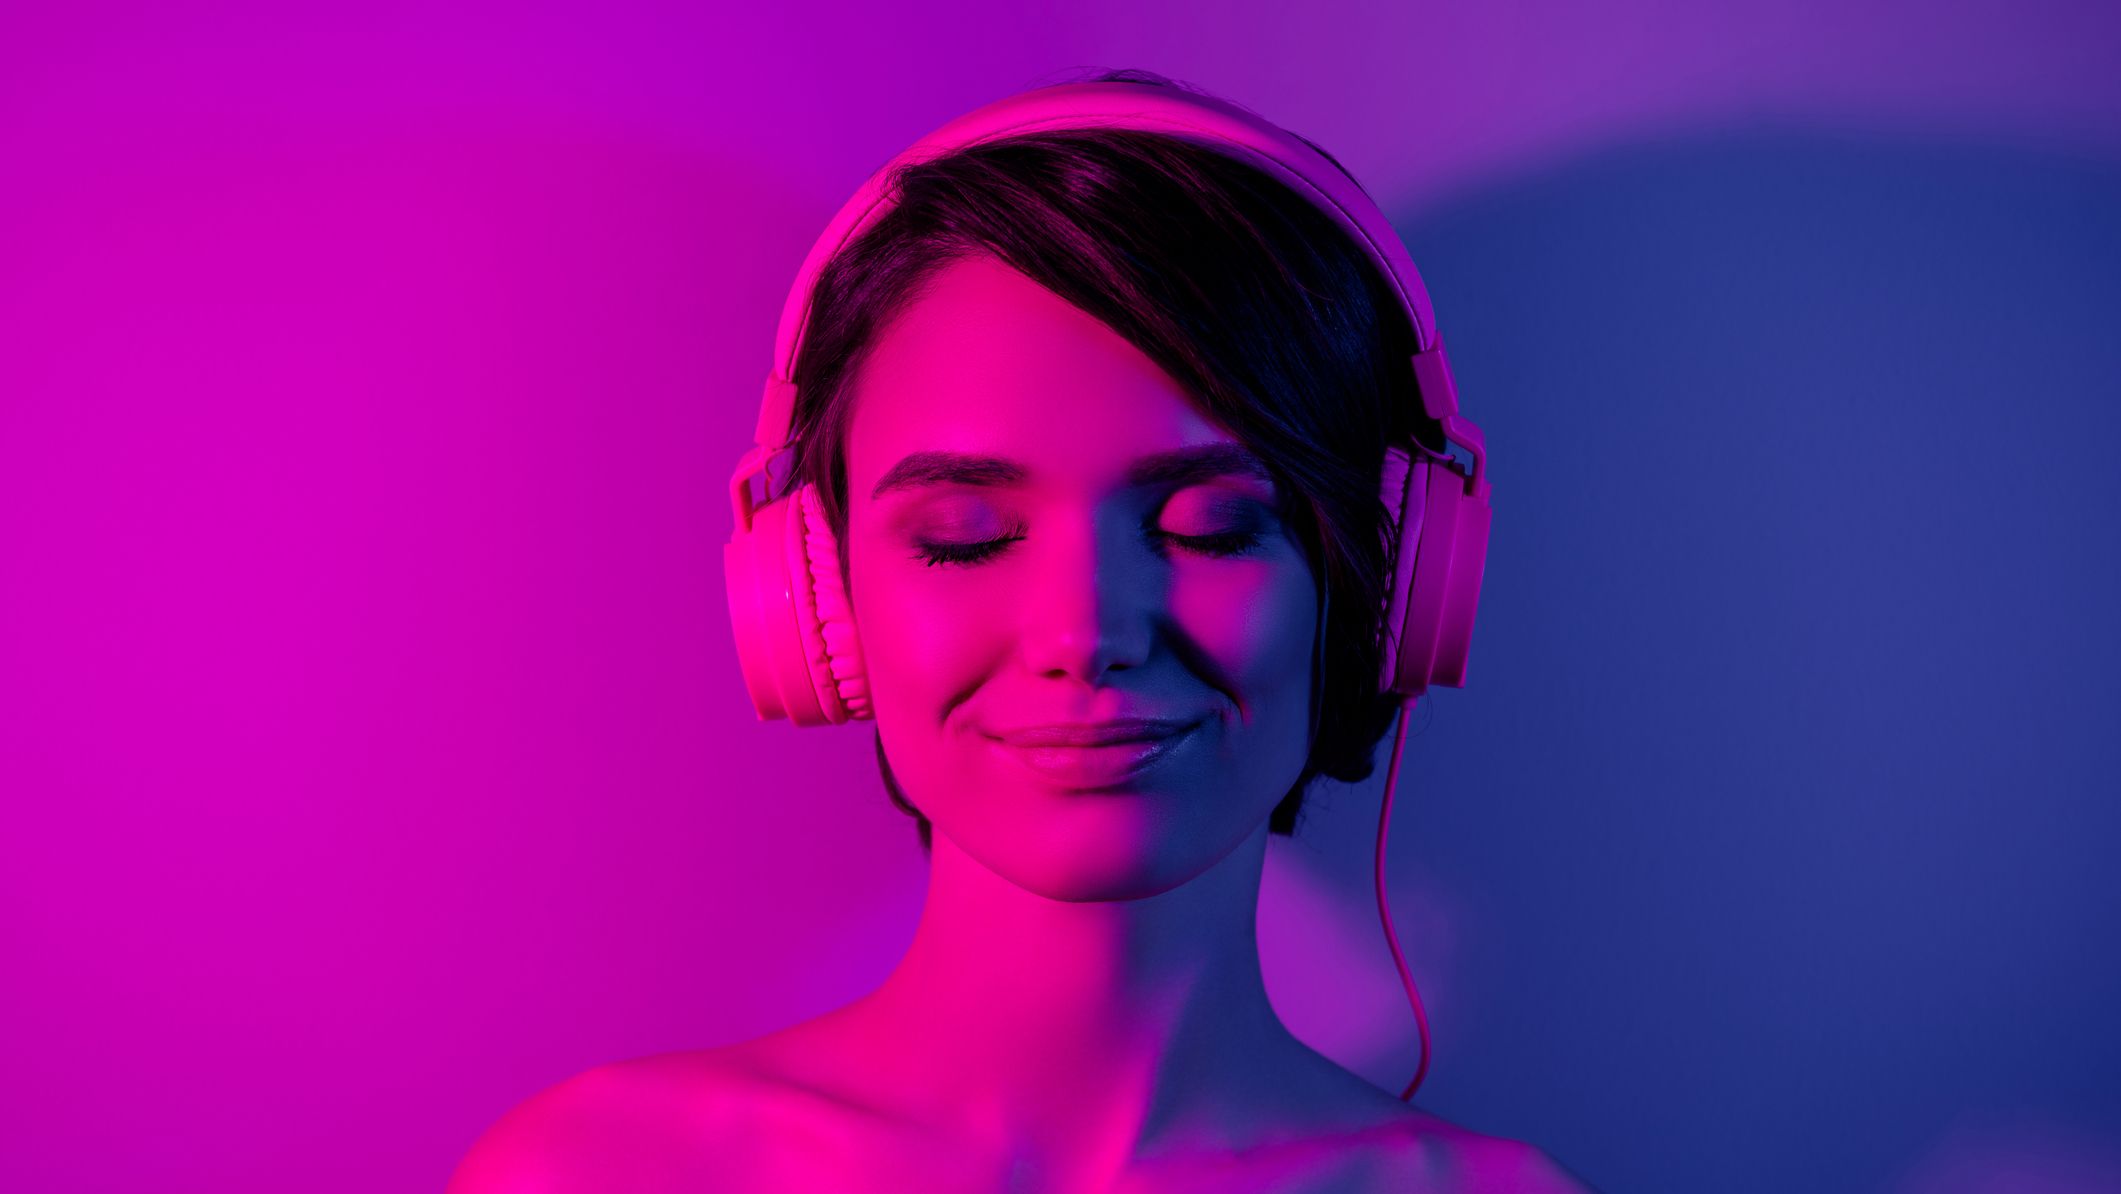 Porney Com - 15 Audio Porn Options and Podcasts